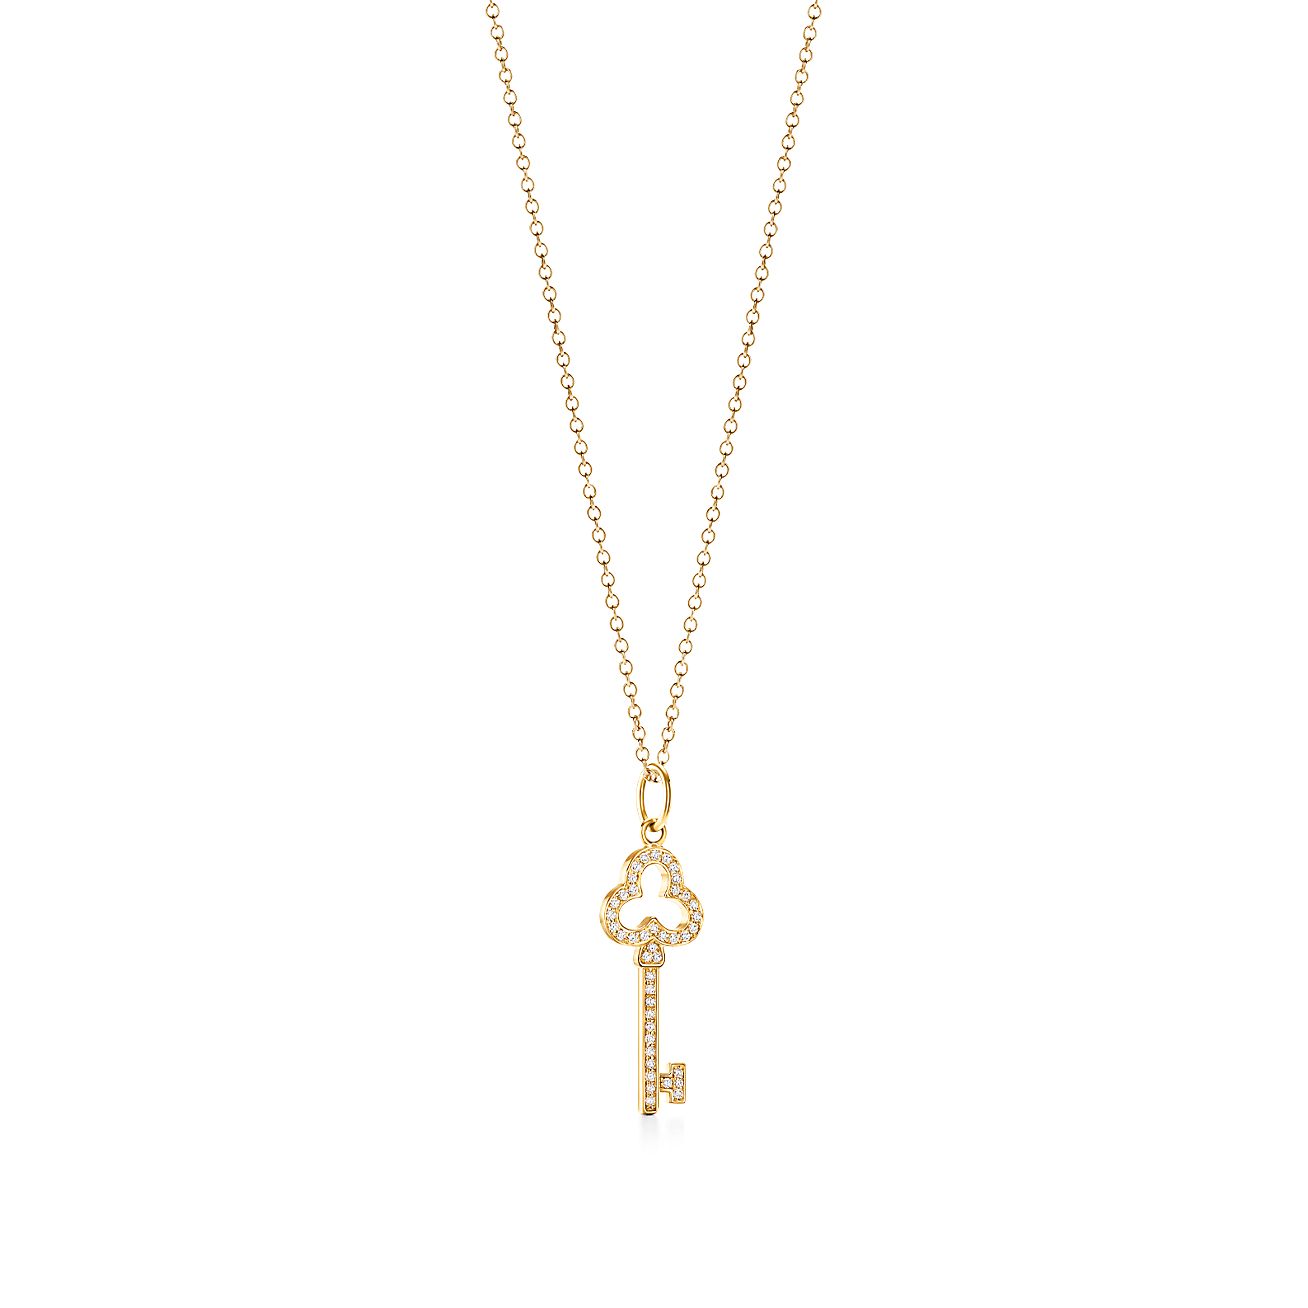 Tiffany Keys open trefoil key in 18k 